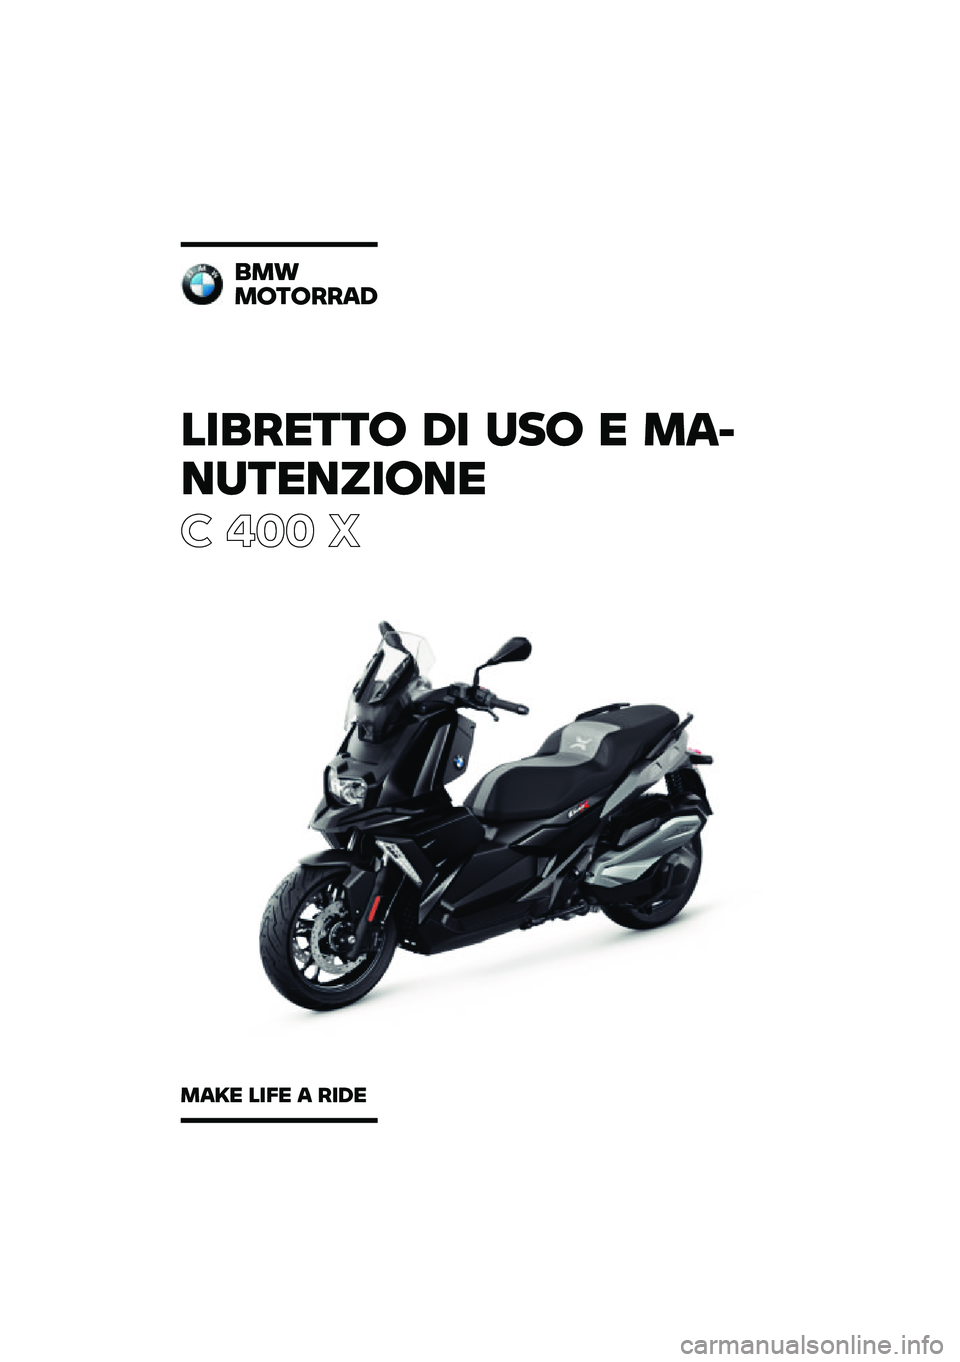 BMW MOTORRAD C 400 X 2020  Libretto di uso e manutenzione (in Italian) ��������\b �	� �
��\b � �\f�
�
��
������\b��
� ��� �
��\f�
�\f�\b��\b���
�	
�\f�
�� ���� �
 ���	� 